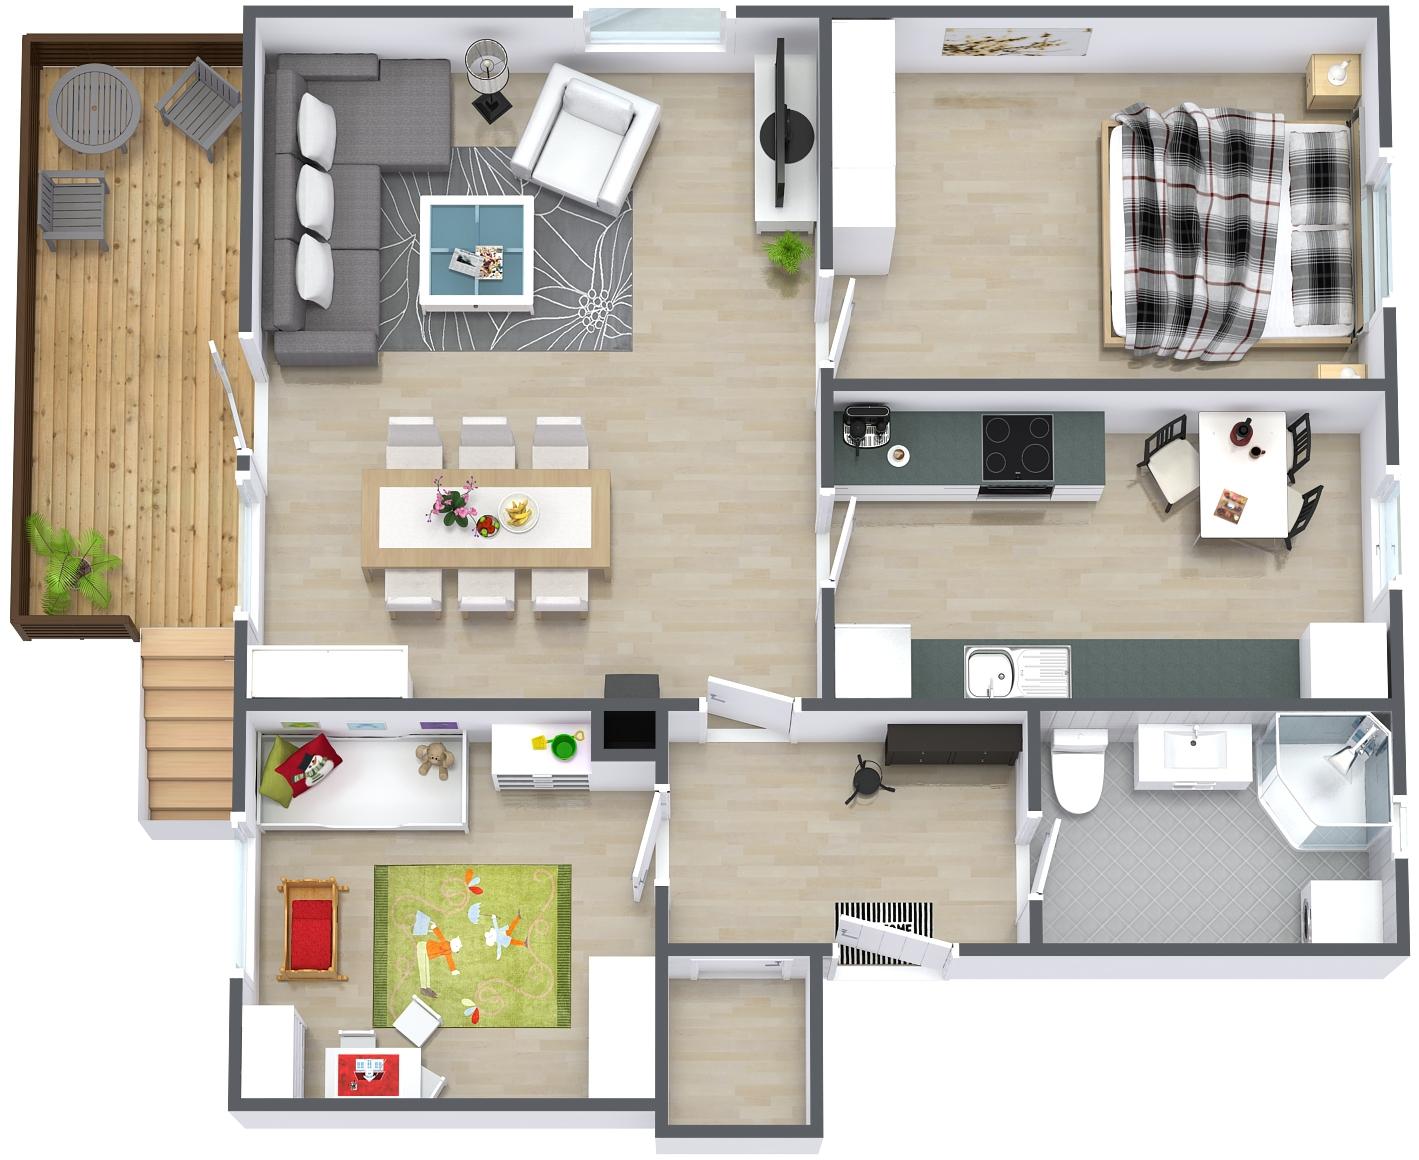 3D Grundriss Wohnung skandinavisch_RoomSketcher #grundriss ©RoomSketcher